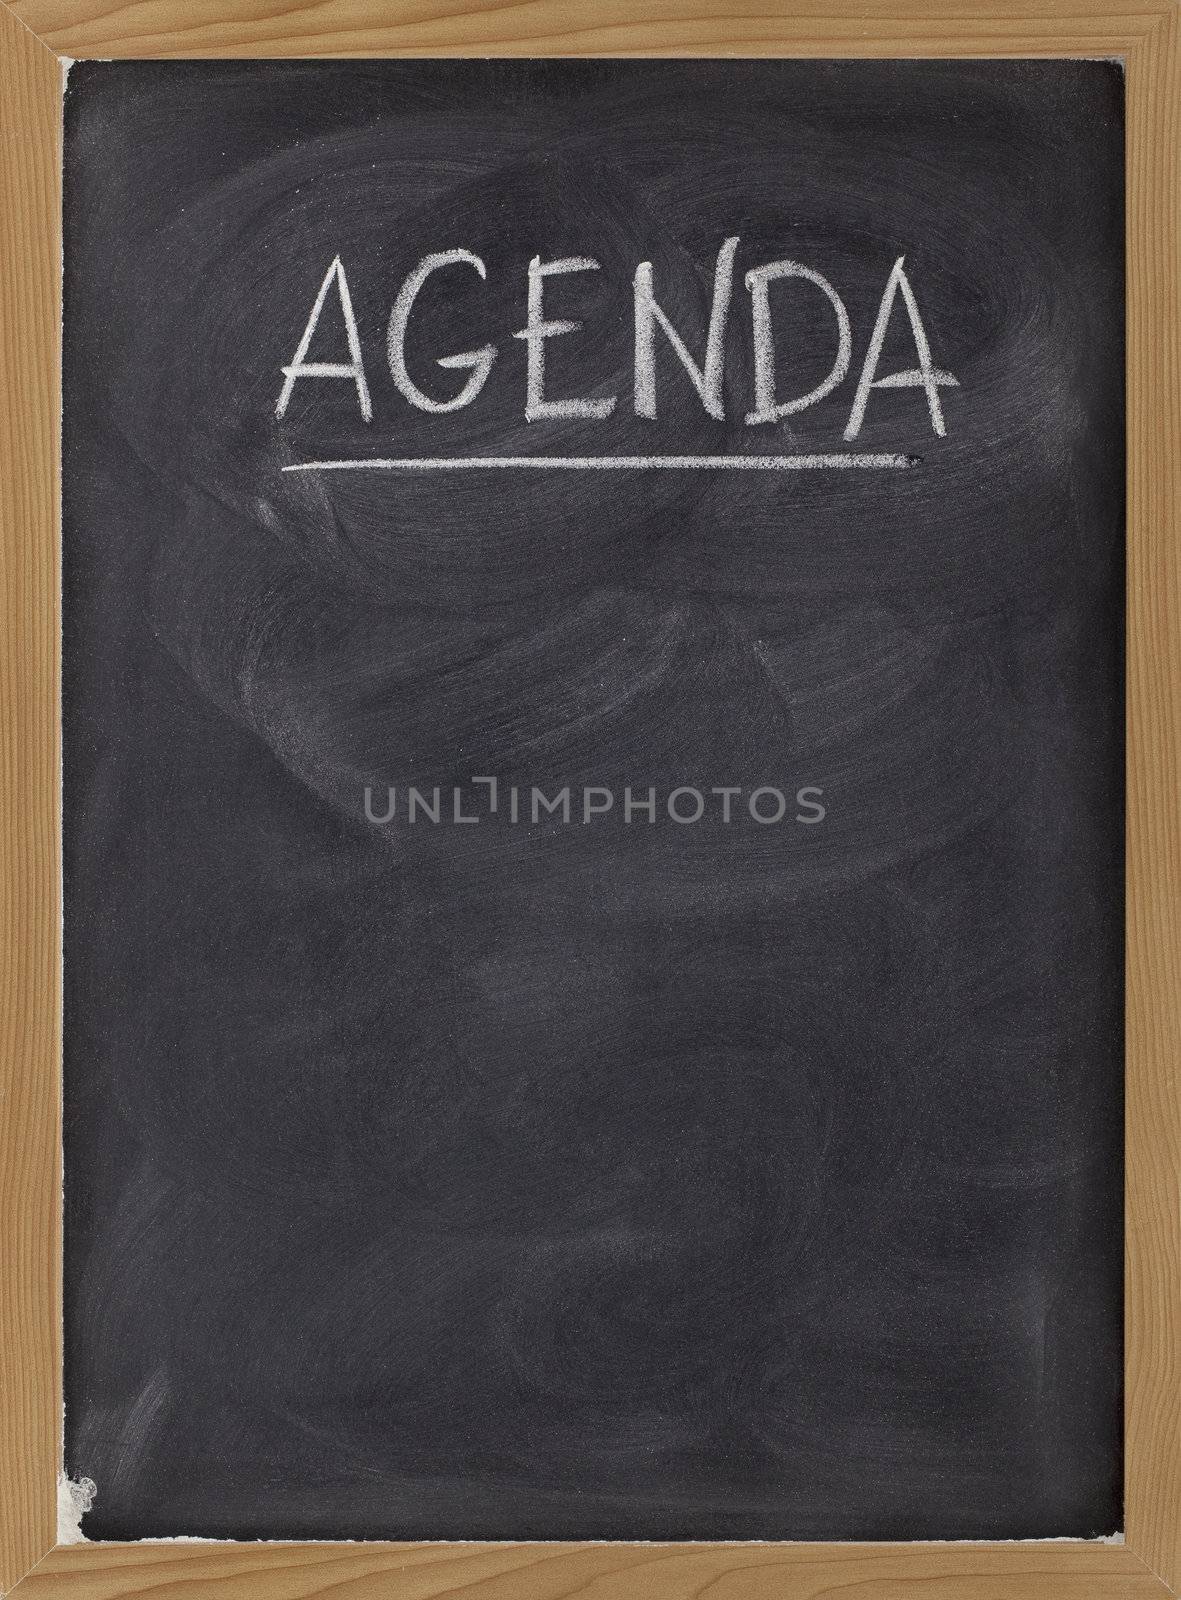 agenda - blank blackboard sign by PixelsAway